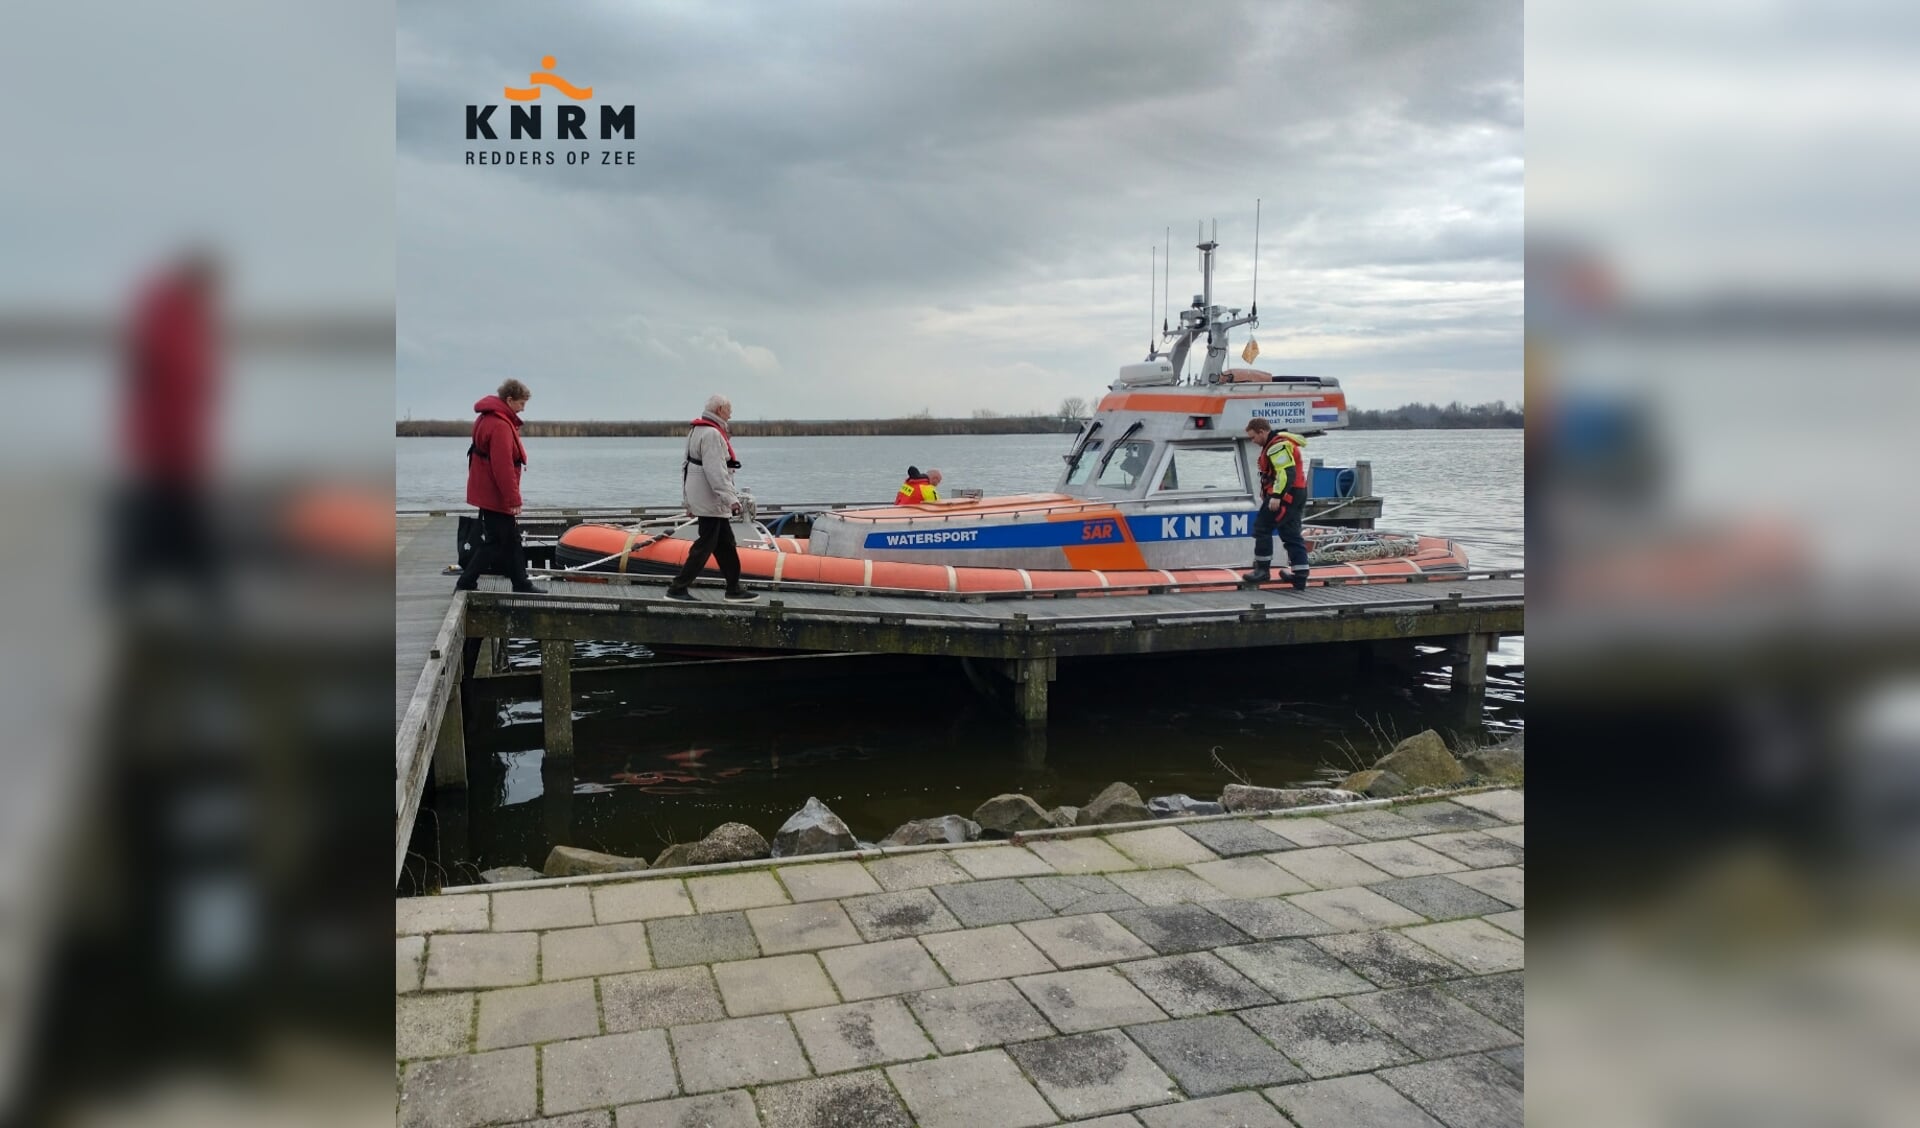 Trouwe KNRM-donateurs maken vaartocht op reddingboot Watersport.